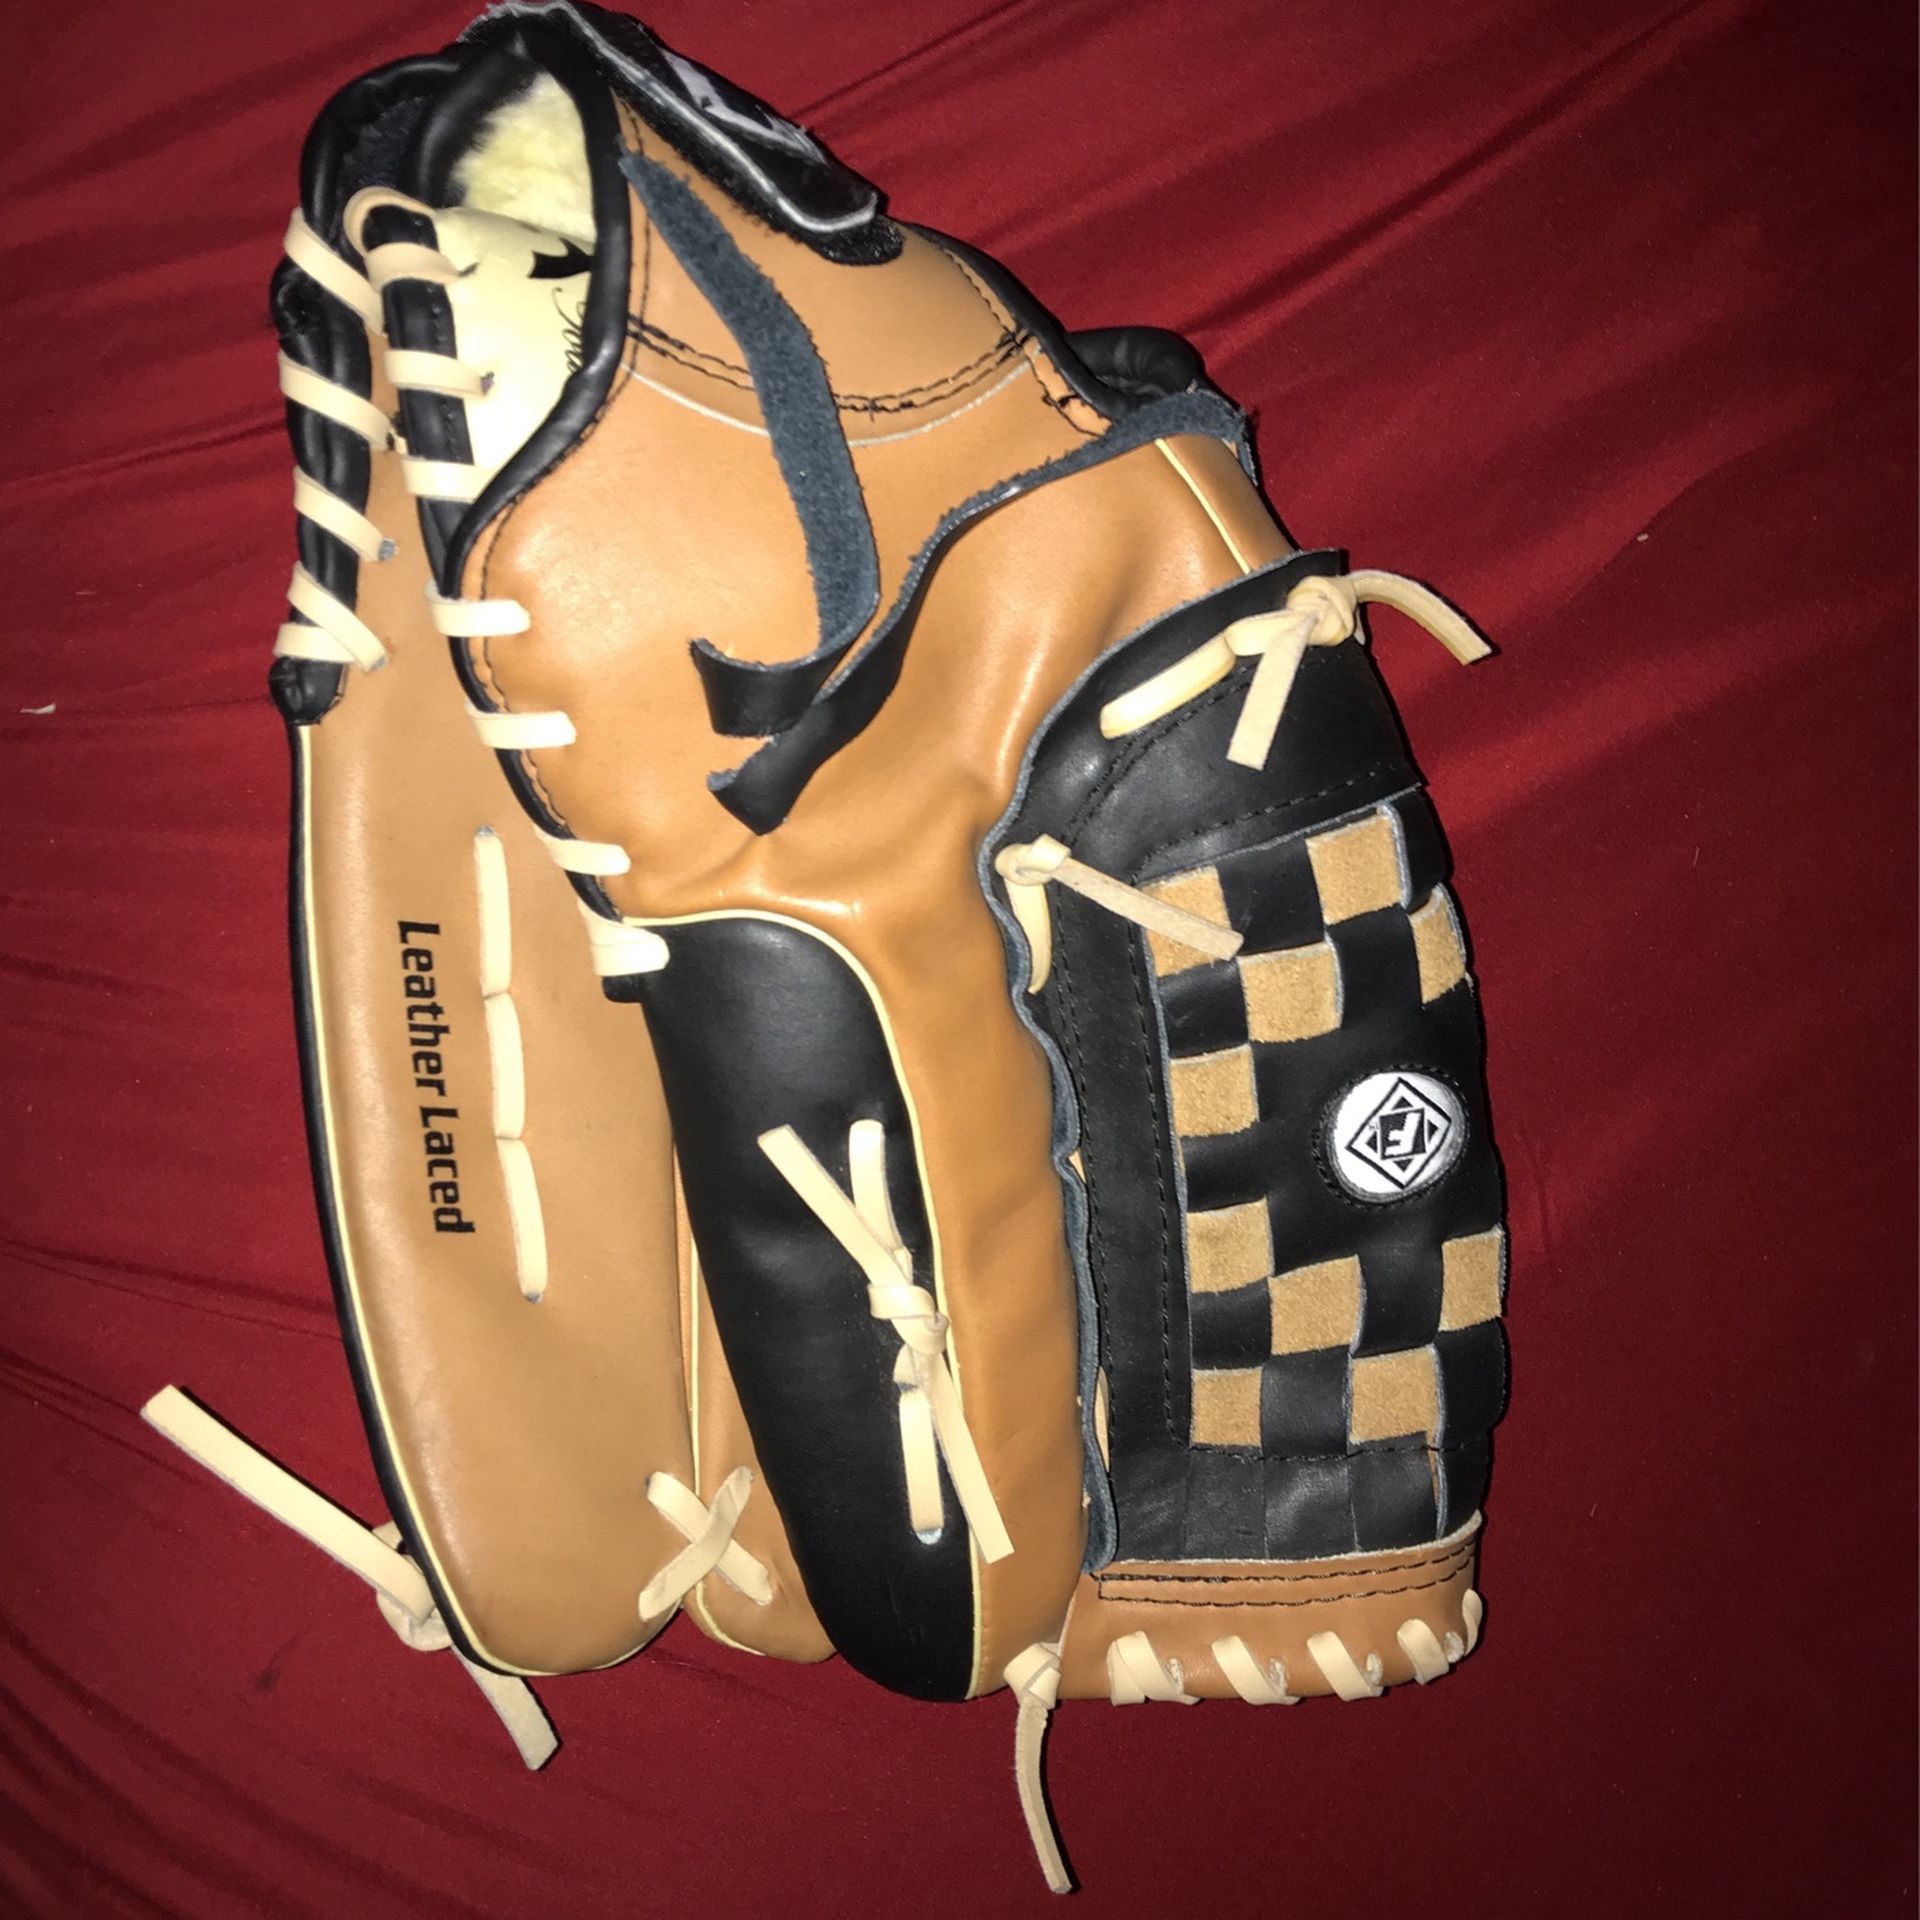 Franklin Baseball Glove